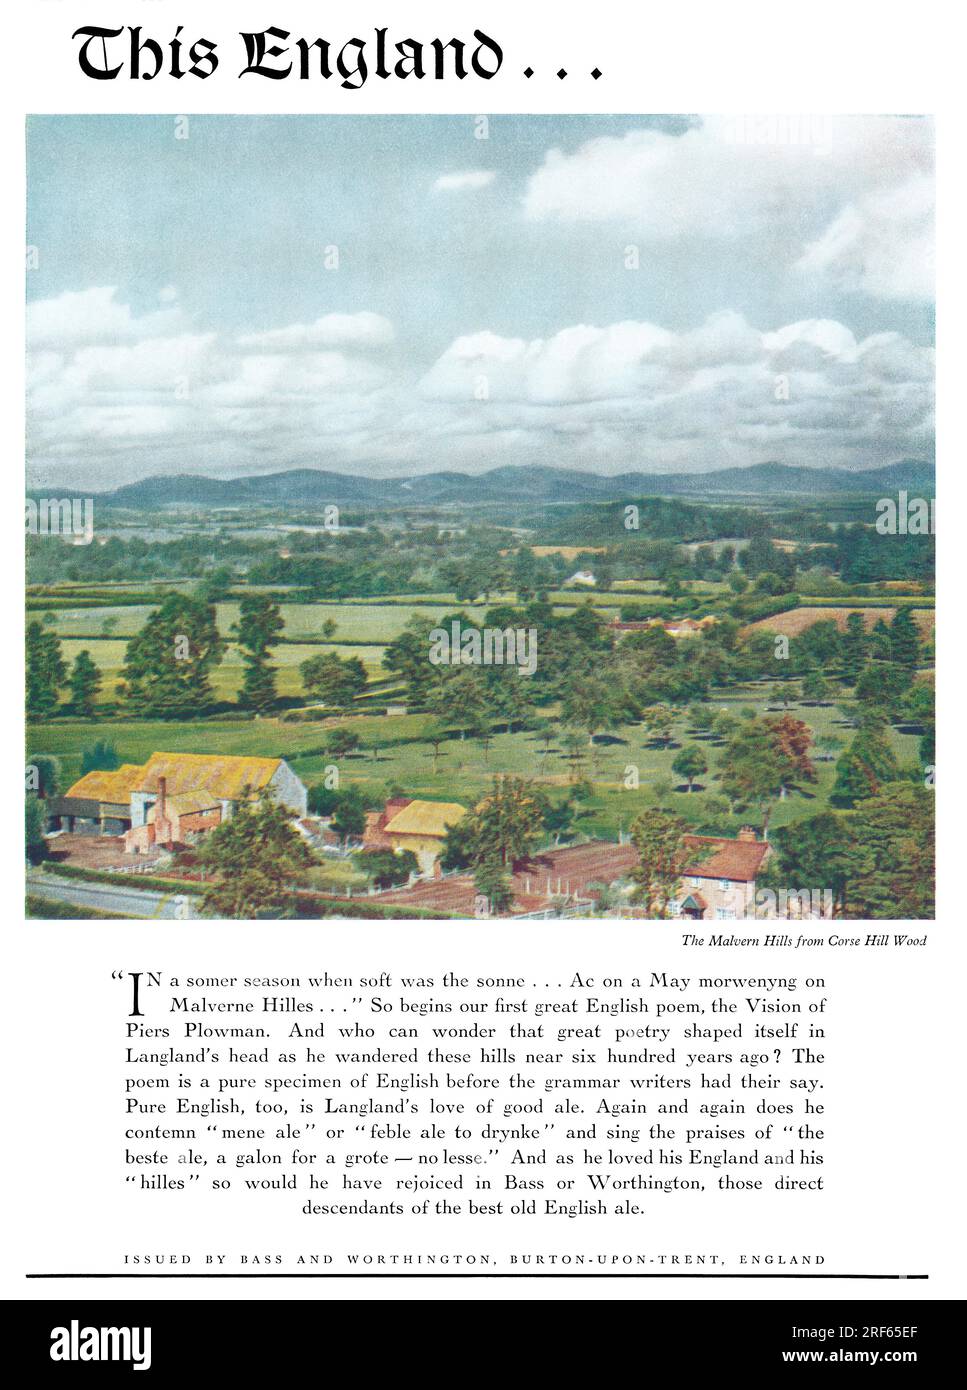 1950 Publicité britannique pour la brasserie Bass & Worthington et leurs bières et bières, montrant les Malvern Hills de Corse Hill Wood. Banque D'Images